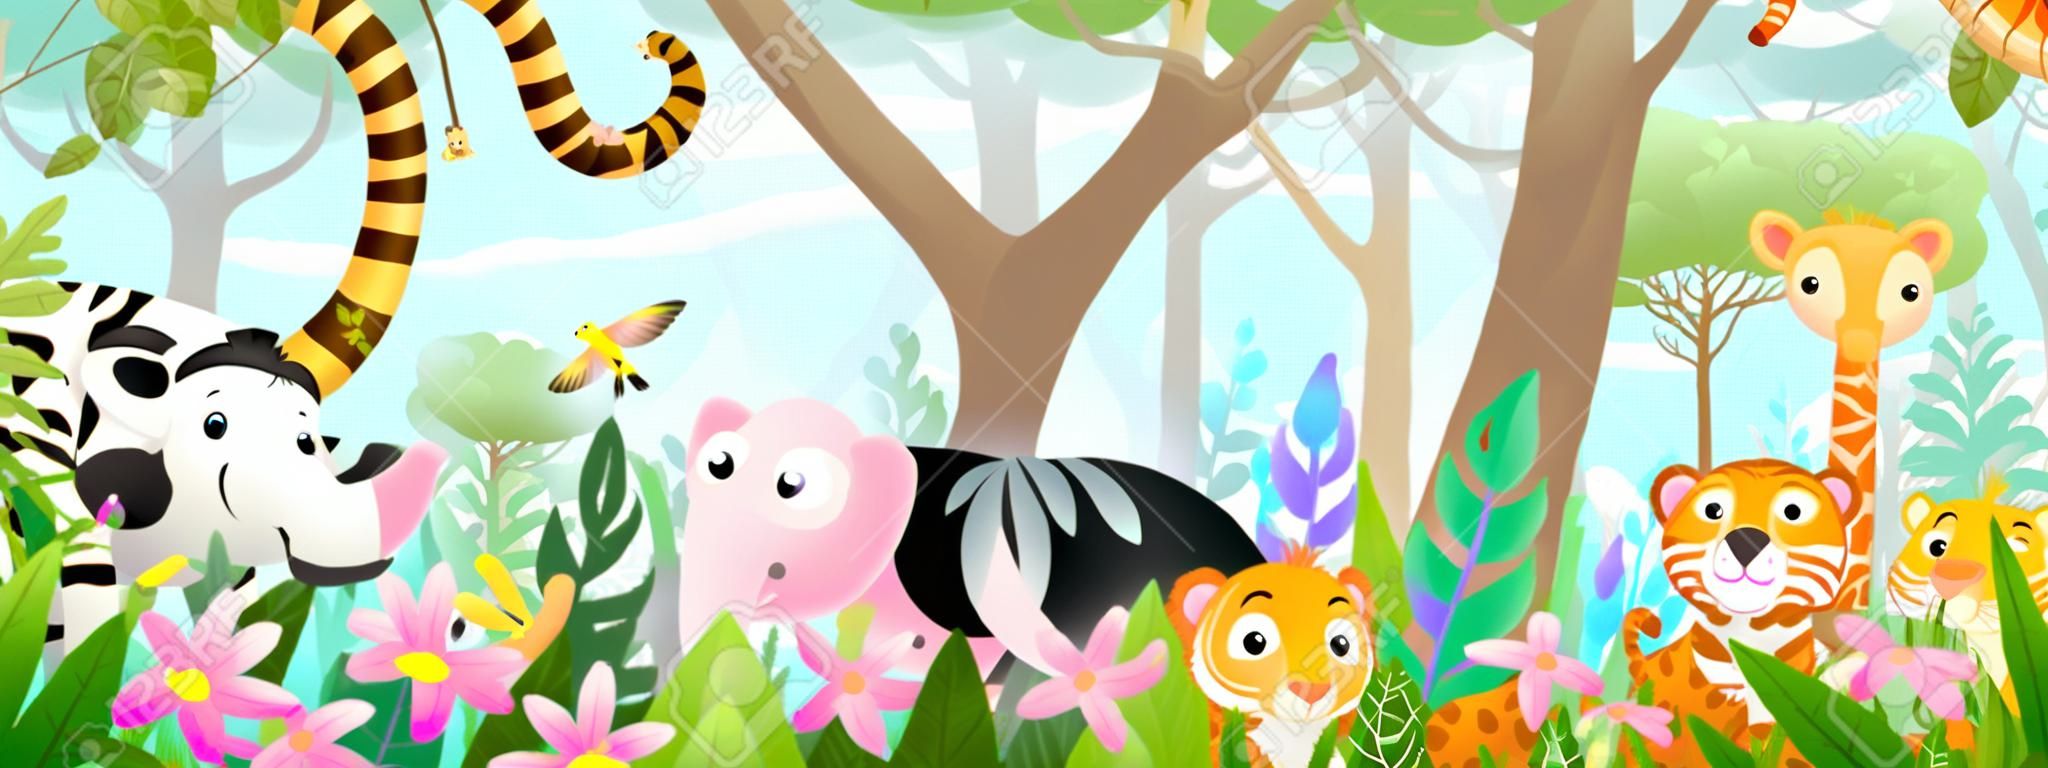 Zwierzęta dla dzieci w dżungli, śliczni przyjaciele w dzikim lesie tropikalnym. wiele uroczych zwierząt z safari lub ogrodów zoologicznych w przyrodzie. pozioma panorama dla dzieci i dzieci, ilustracja wektorowa.